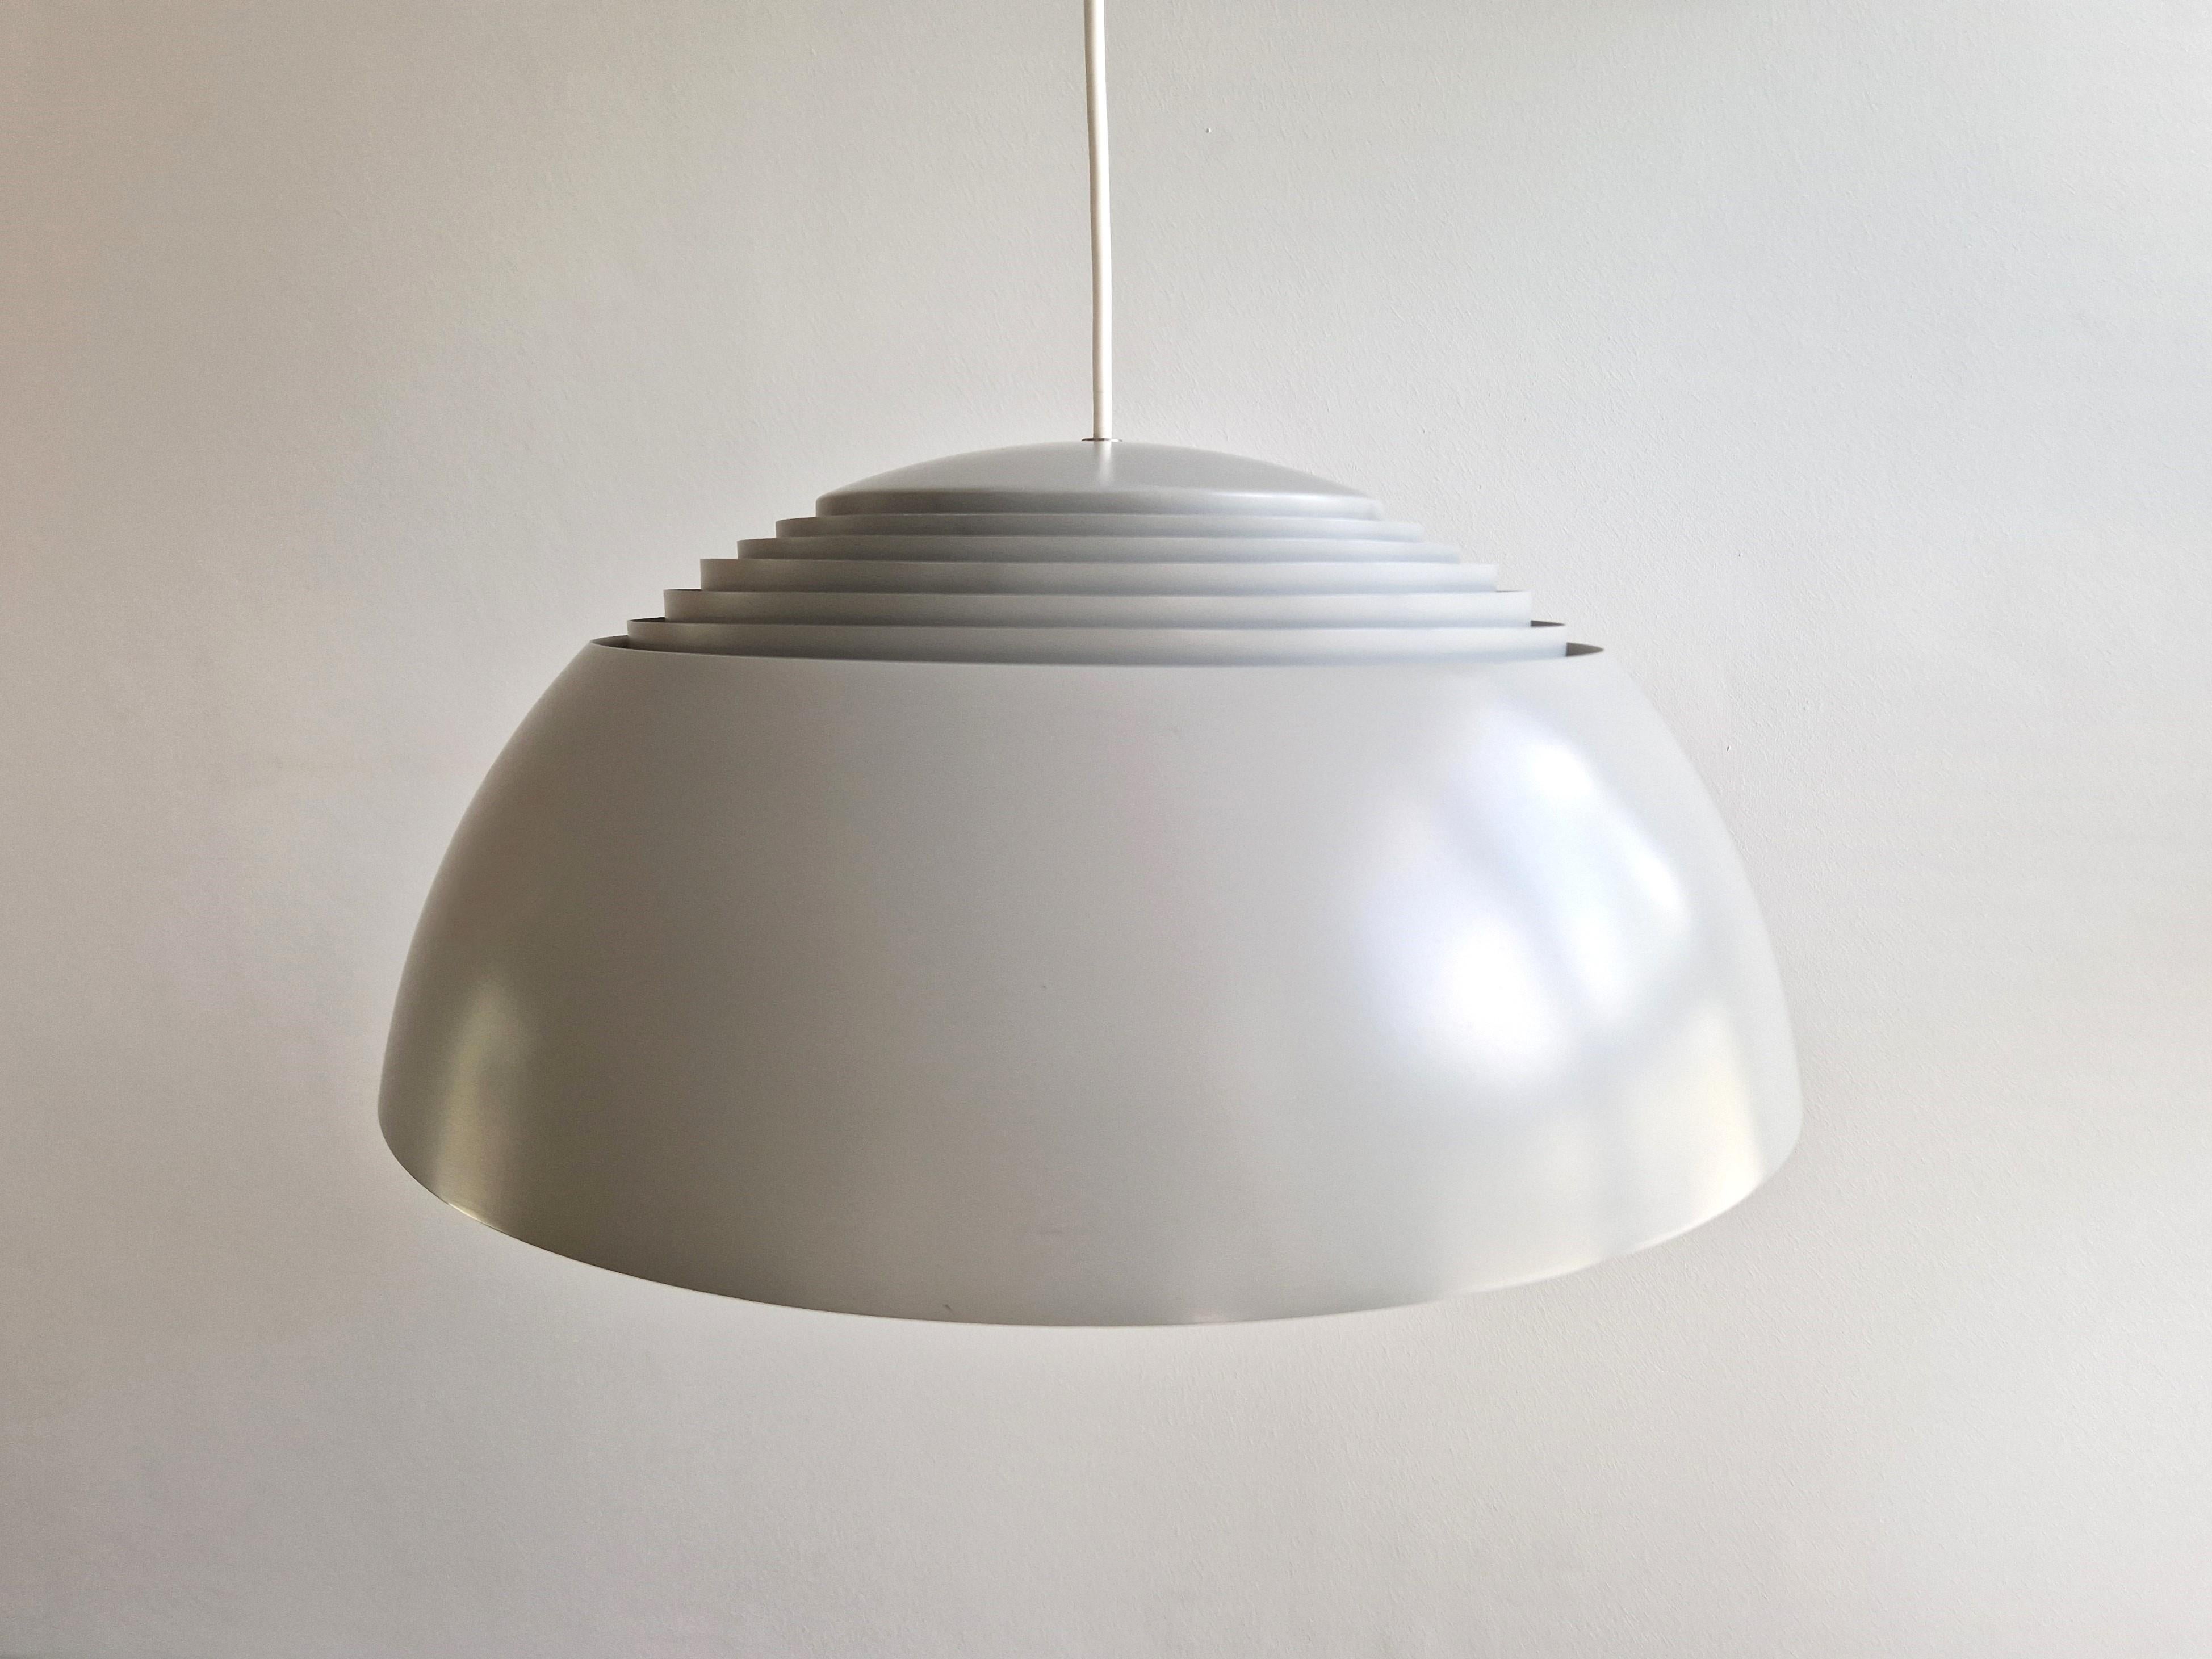 L'emblématique lampe suspendue AJ Royal de Louis Poulsen est une création du célèbre architecte danois Arne Jacobsen datant de 1958 et destinée à l'hôtel SAS Royal de Copenhague. Il s'agissait d'un article très en vogue dans les années 1960 et il